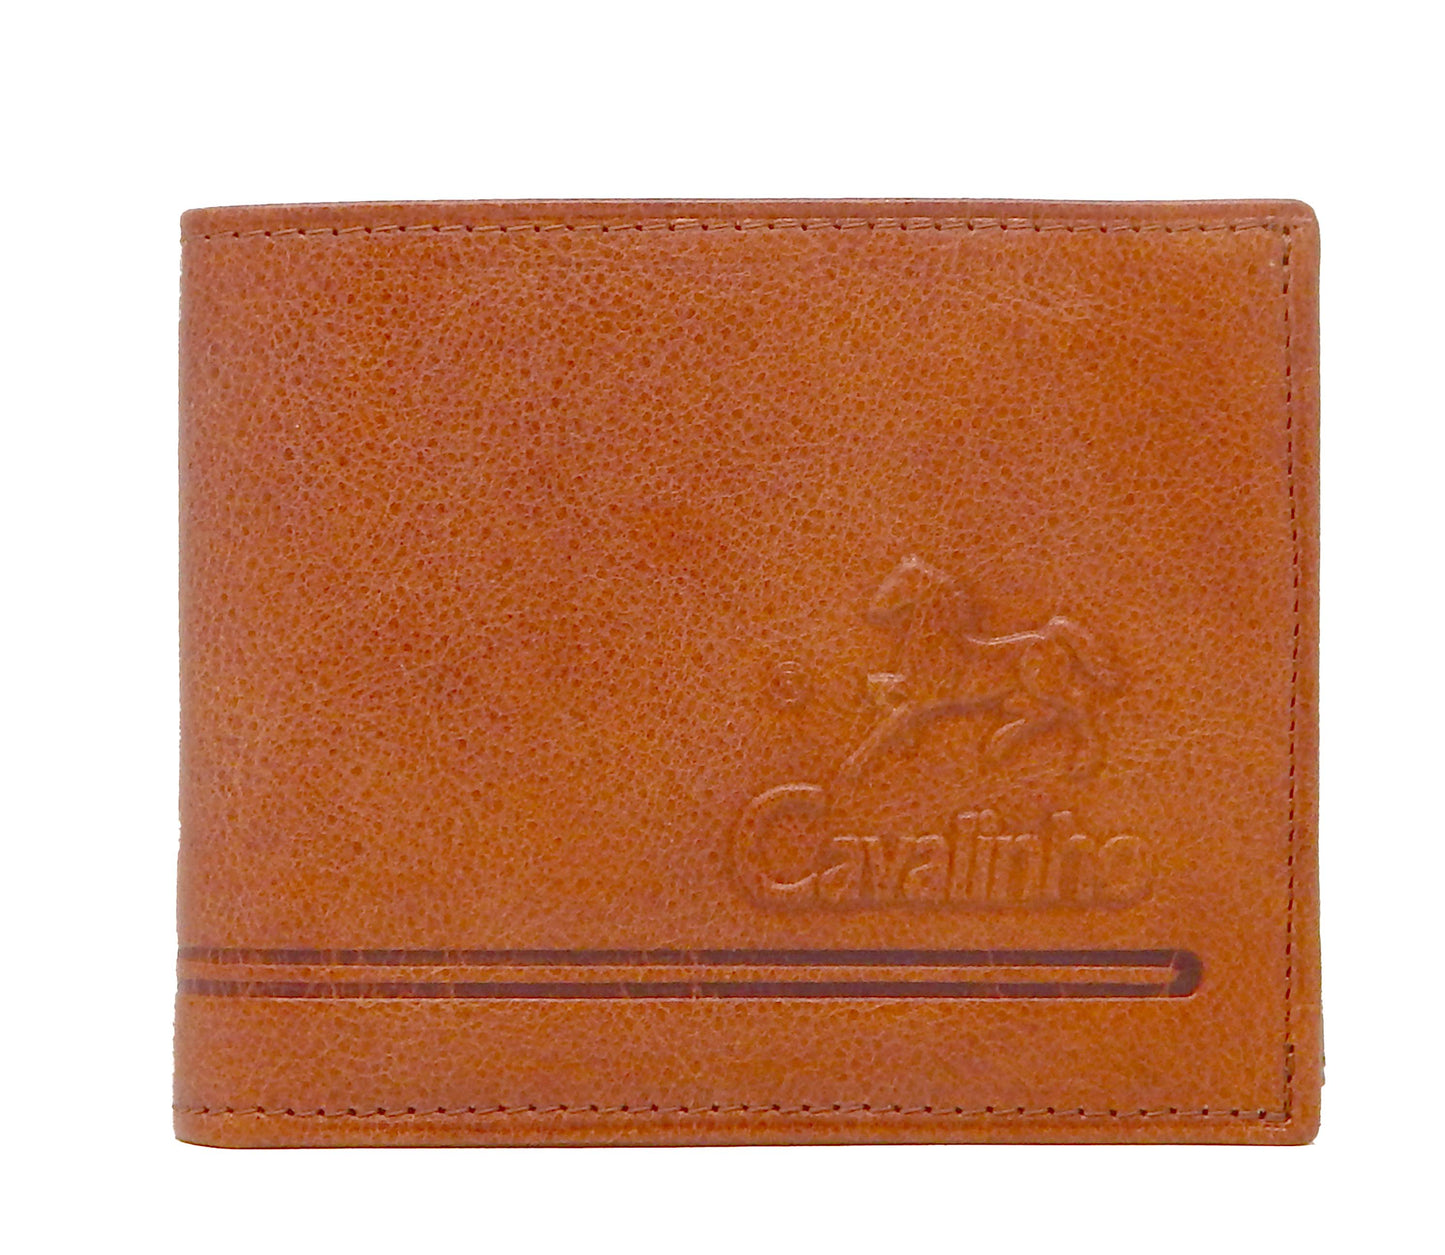 #color_ SaddleBrown | Cavalinho Men's Trifold Leather Wallet - SaddleBrown - 28610507.13.99_1